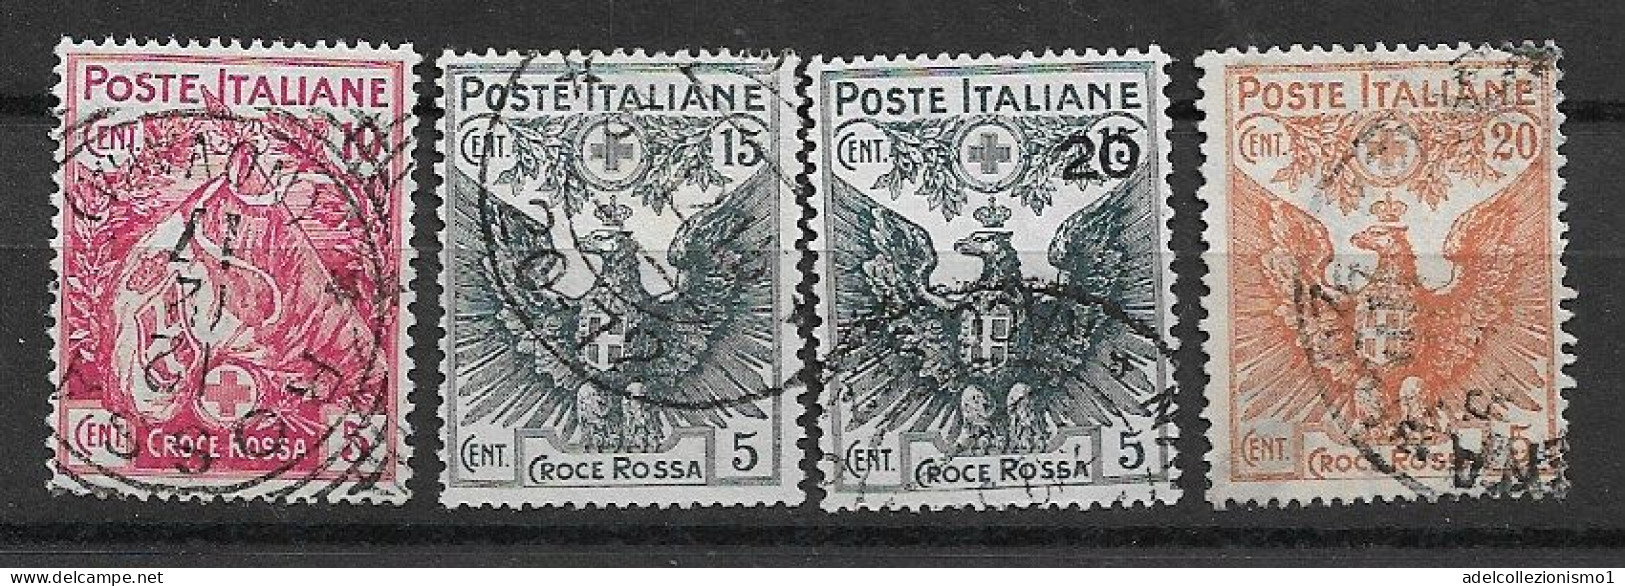 49549) Pro Croce Rossa - 1915/1916  -SERIE COMPLETA USATA - Reklame